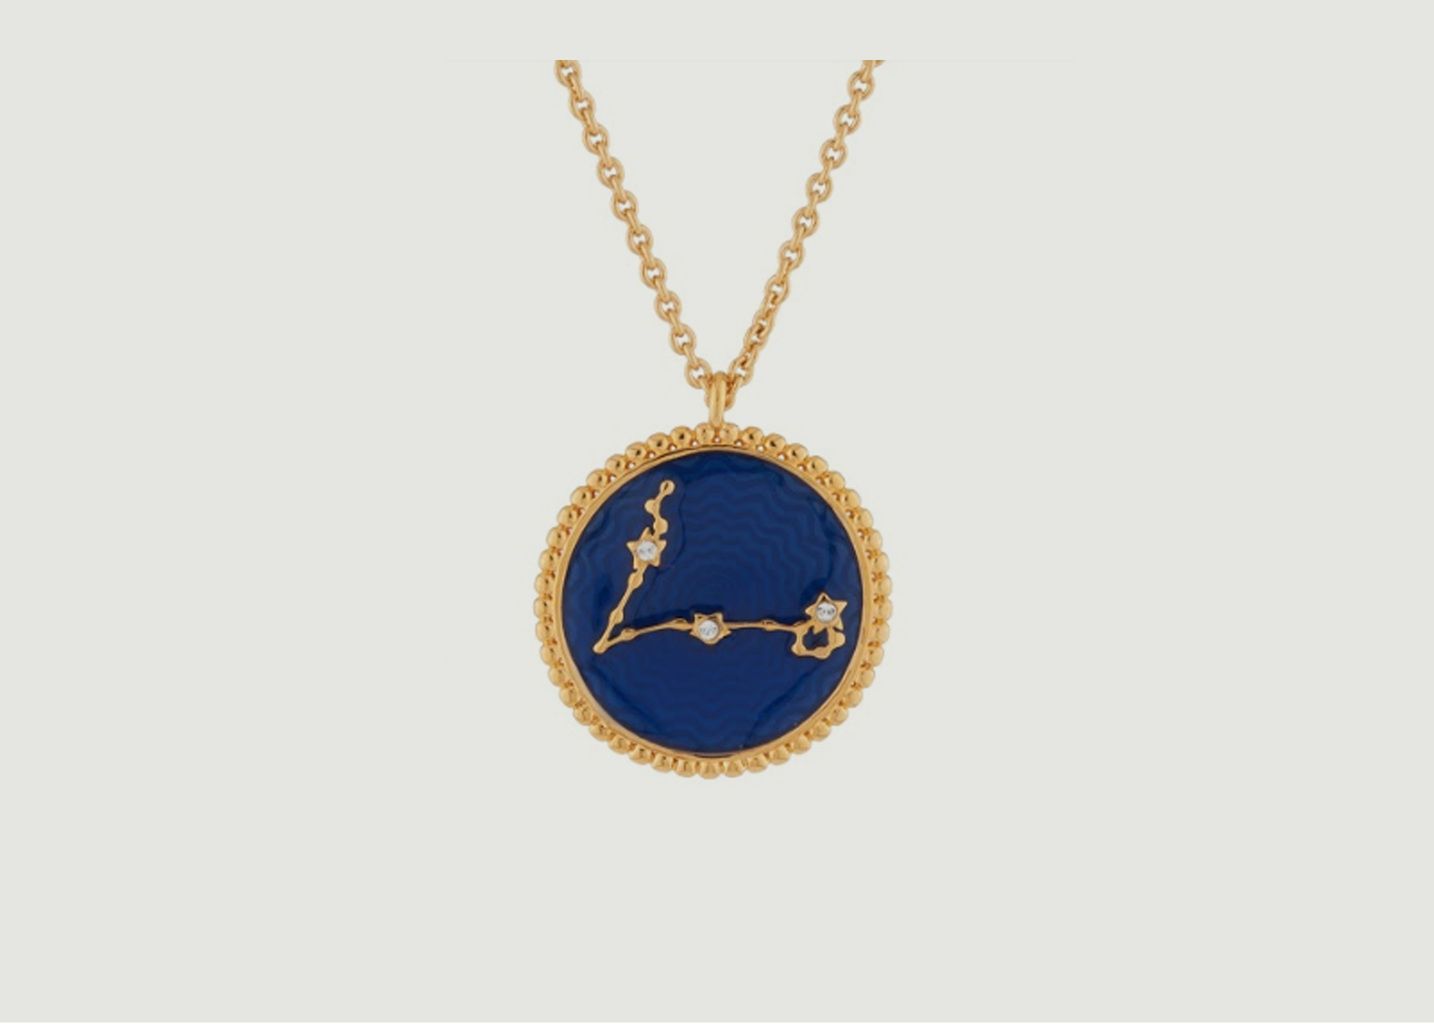 Pisces zodiac sign necklace - Les Néréides